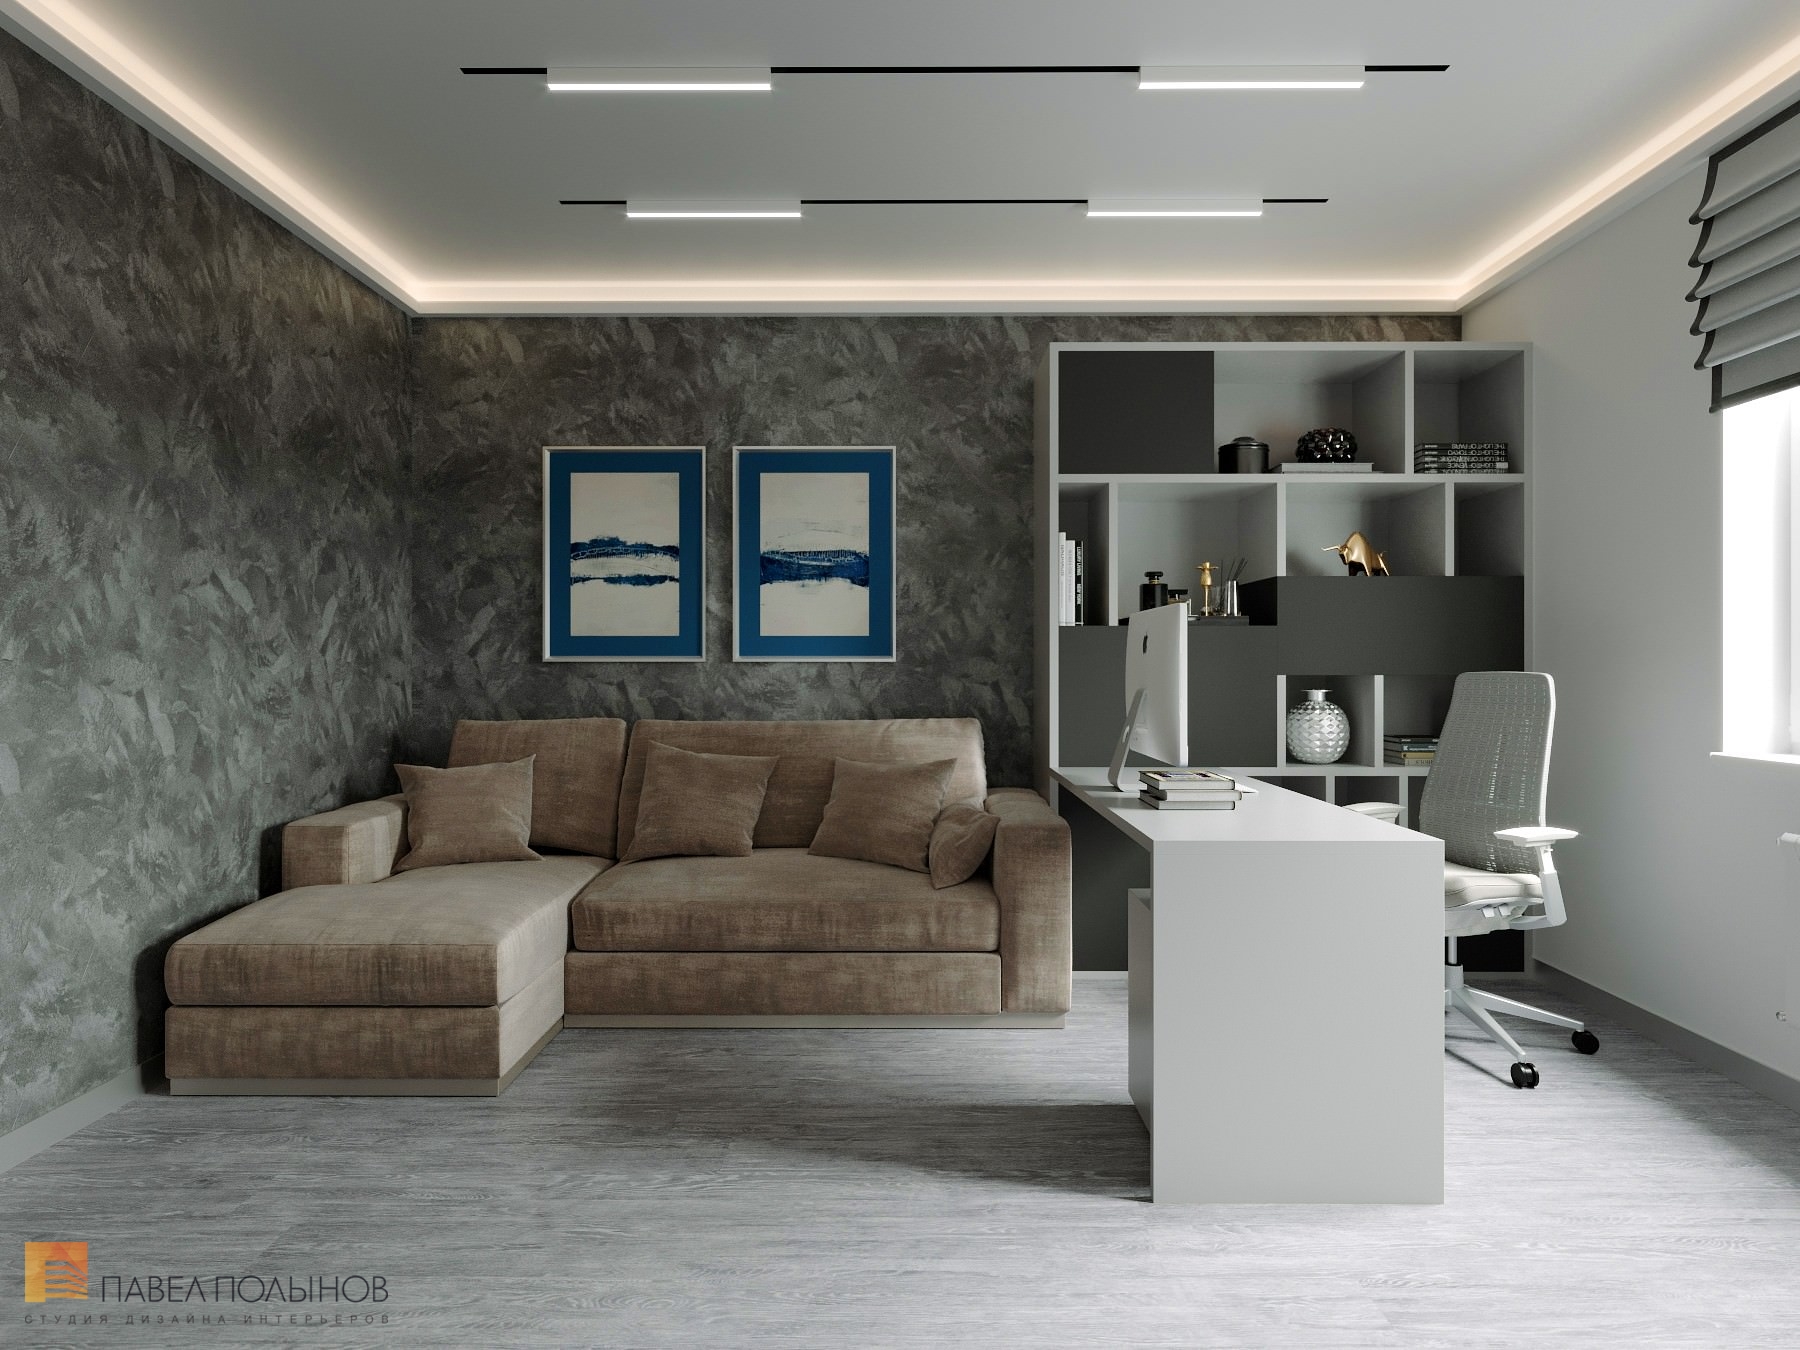 Фото дизайн домашнего кабинета из проекта «Дизайн интерьер квартиры в ЖК «Кремлевские звезды», современный стиль, 133 кв.м.»